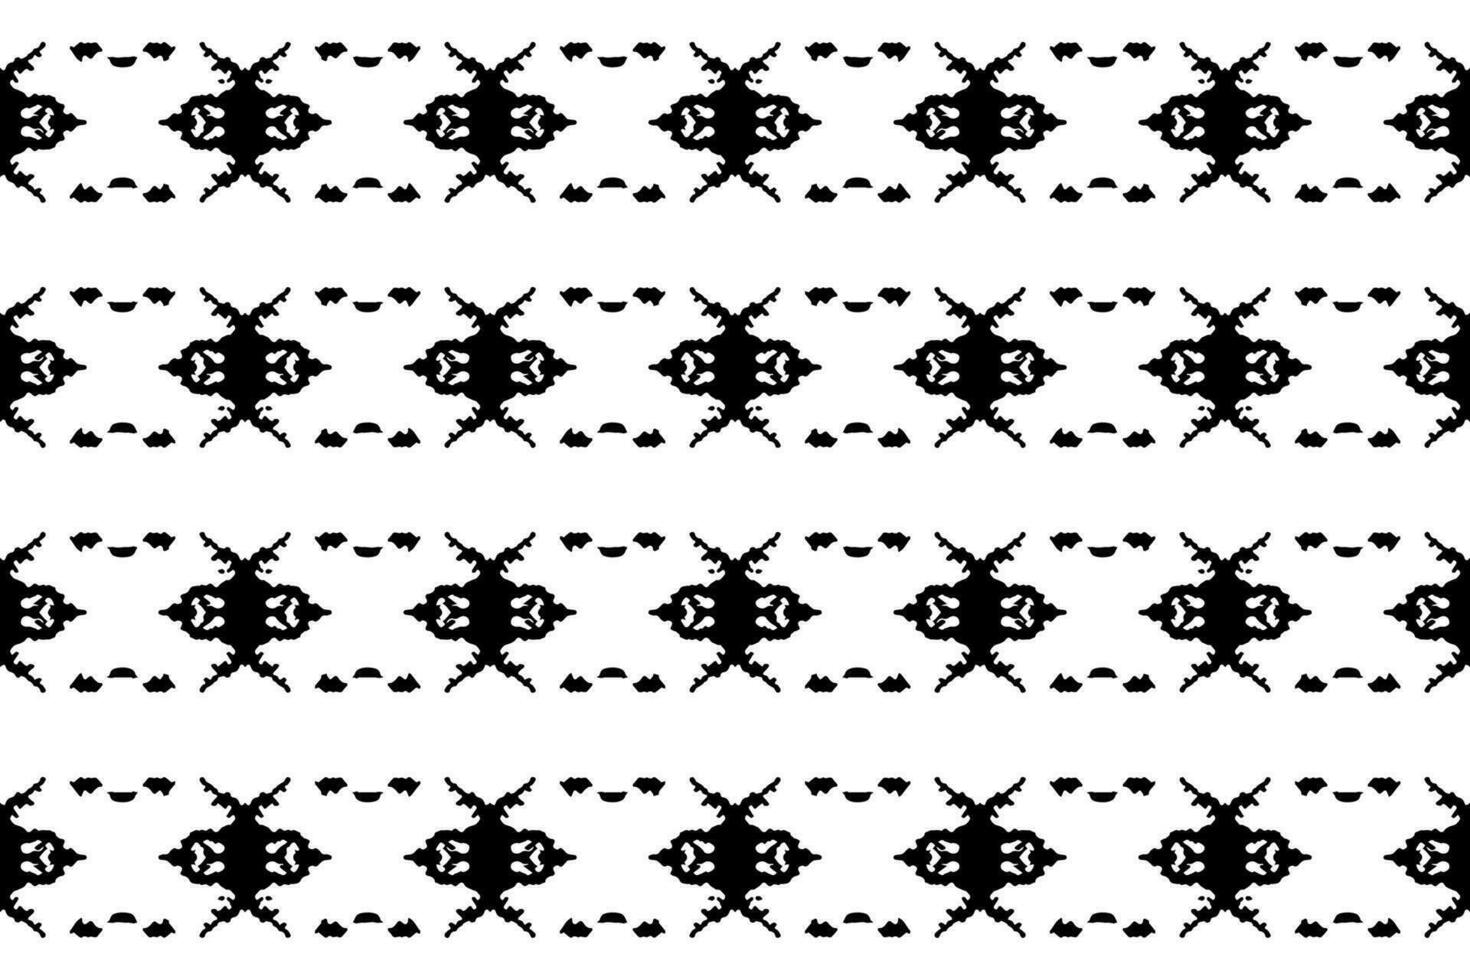 naadloos batik patroon, geometrische tribal patroon, het lijkt op etnisch boho, azteken stijl, ikat stijl.luxe decoratief kleding stof zwart en wit naadloos patroon voor beroemd spandoeken. vector